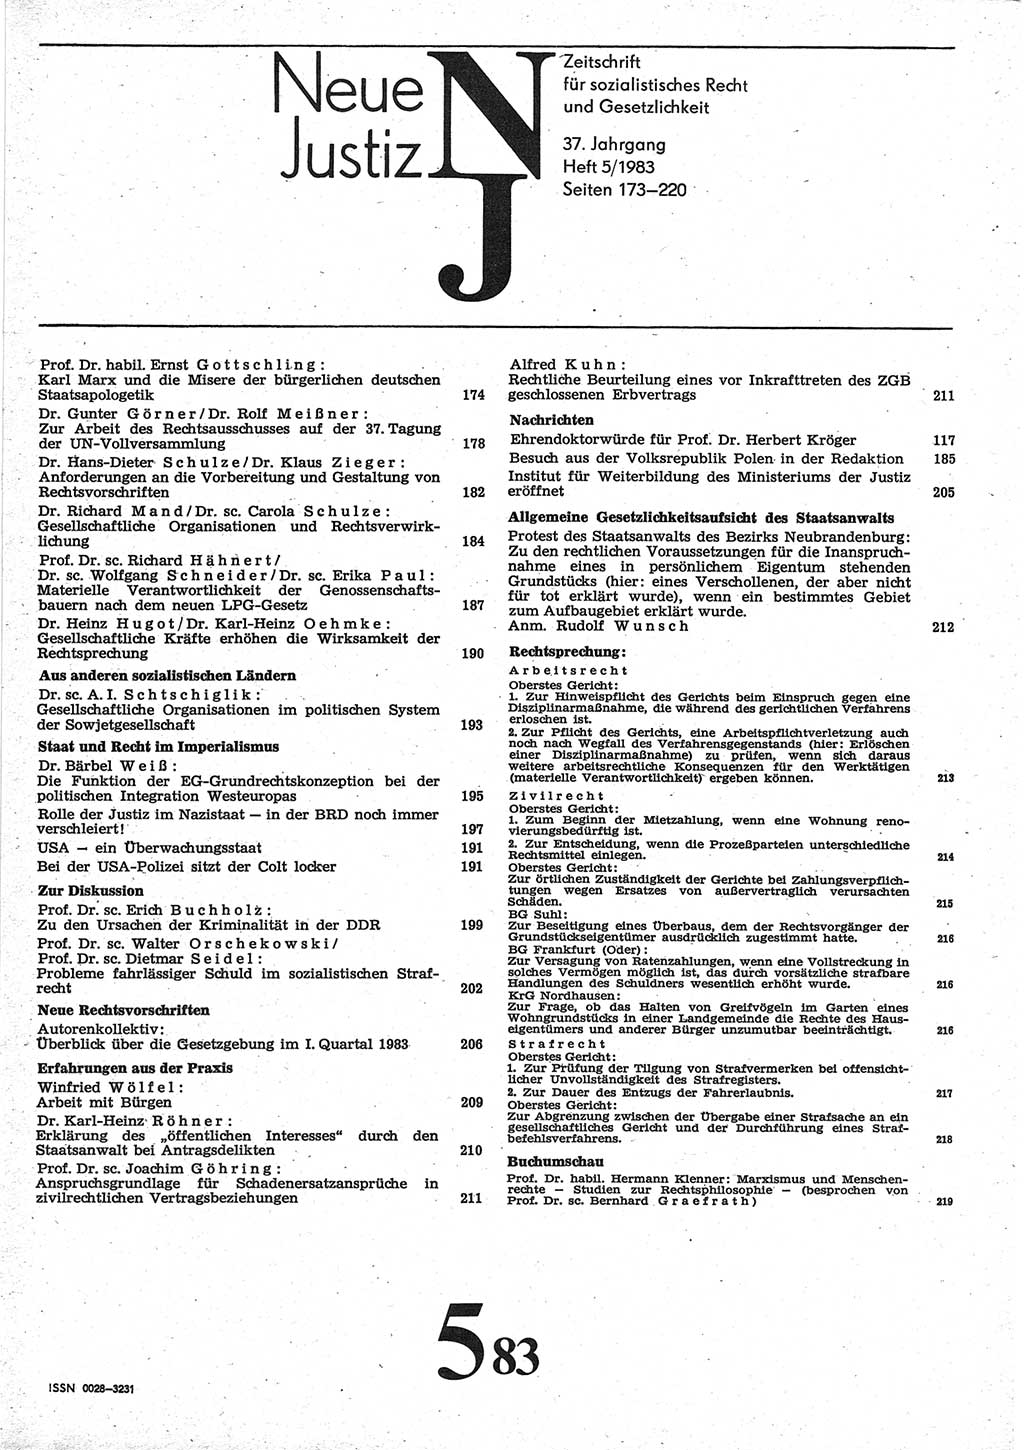 Neue Justiz (NJ), Zeitschrift für sozialistisches Recht und Gesetzlichkeit [Deutsche Demokratische Republik (DDR)], 37. Jahrgang 1983, Seite 173 (NJ DDR 1983, S. 173)